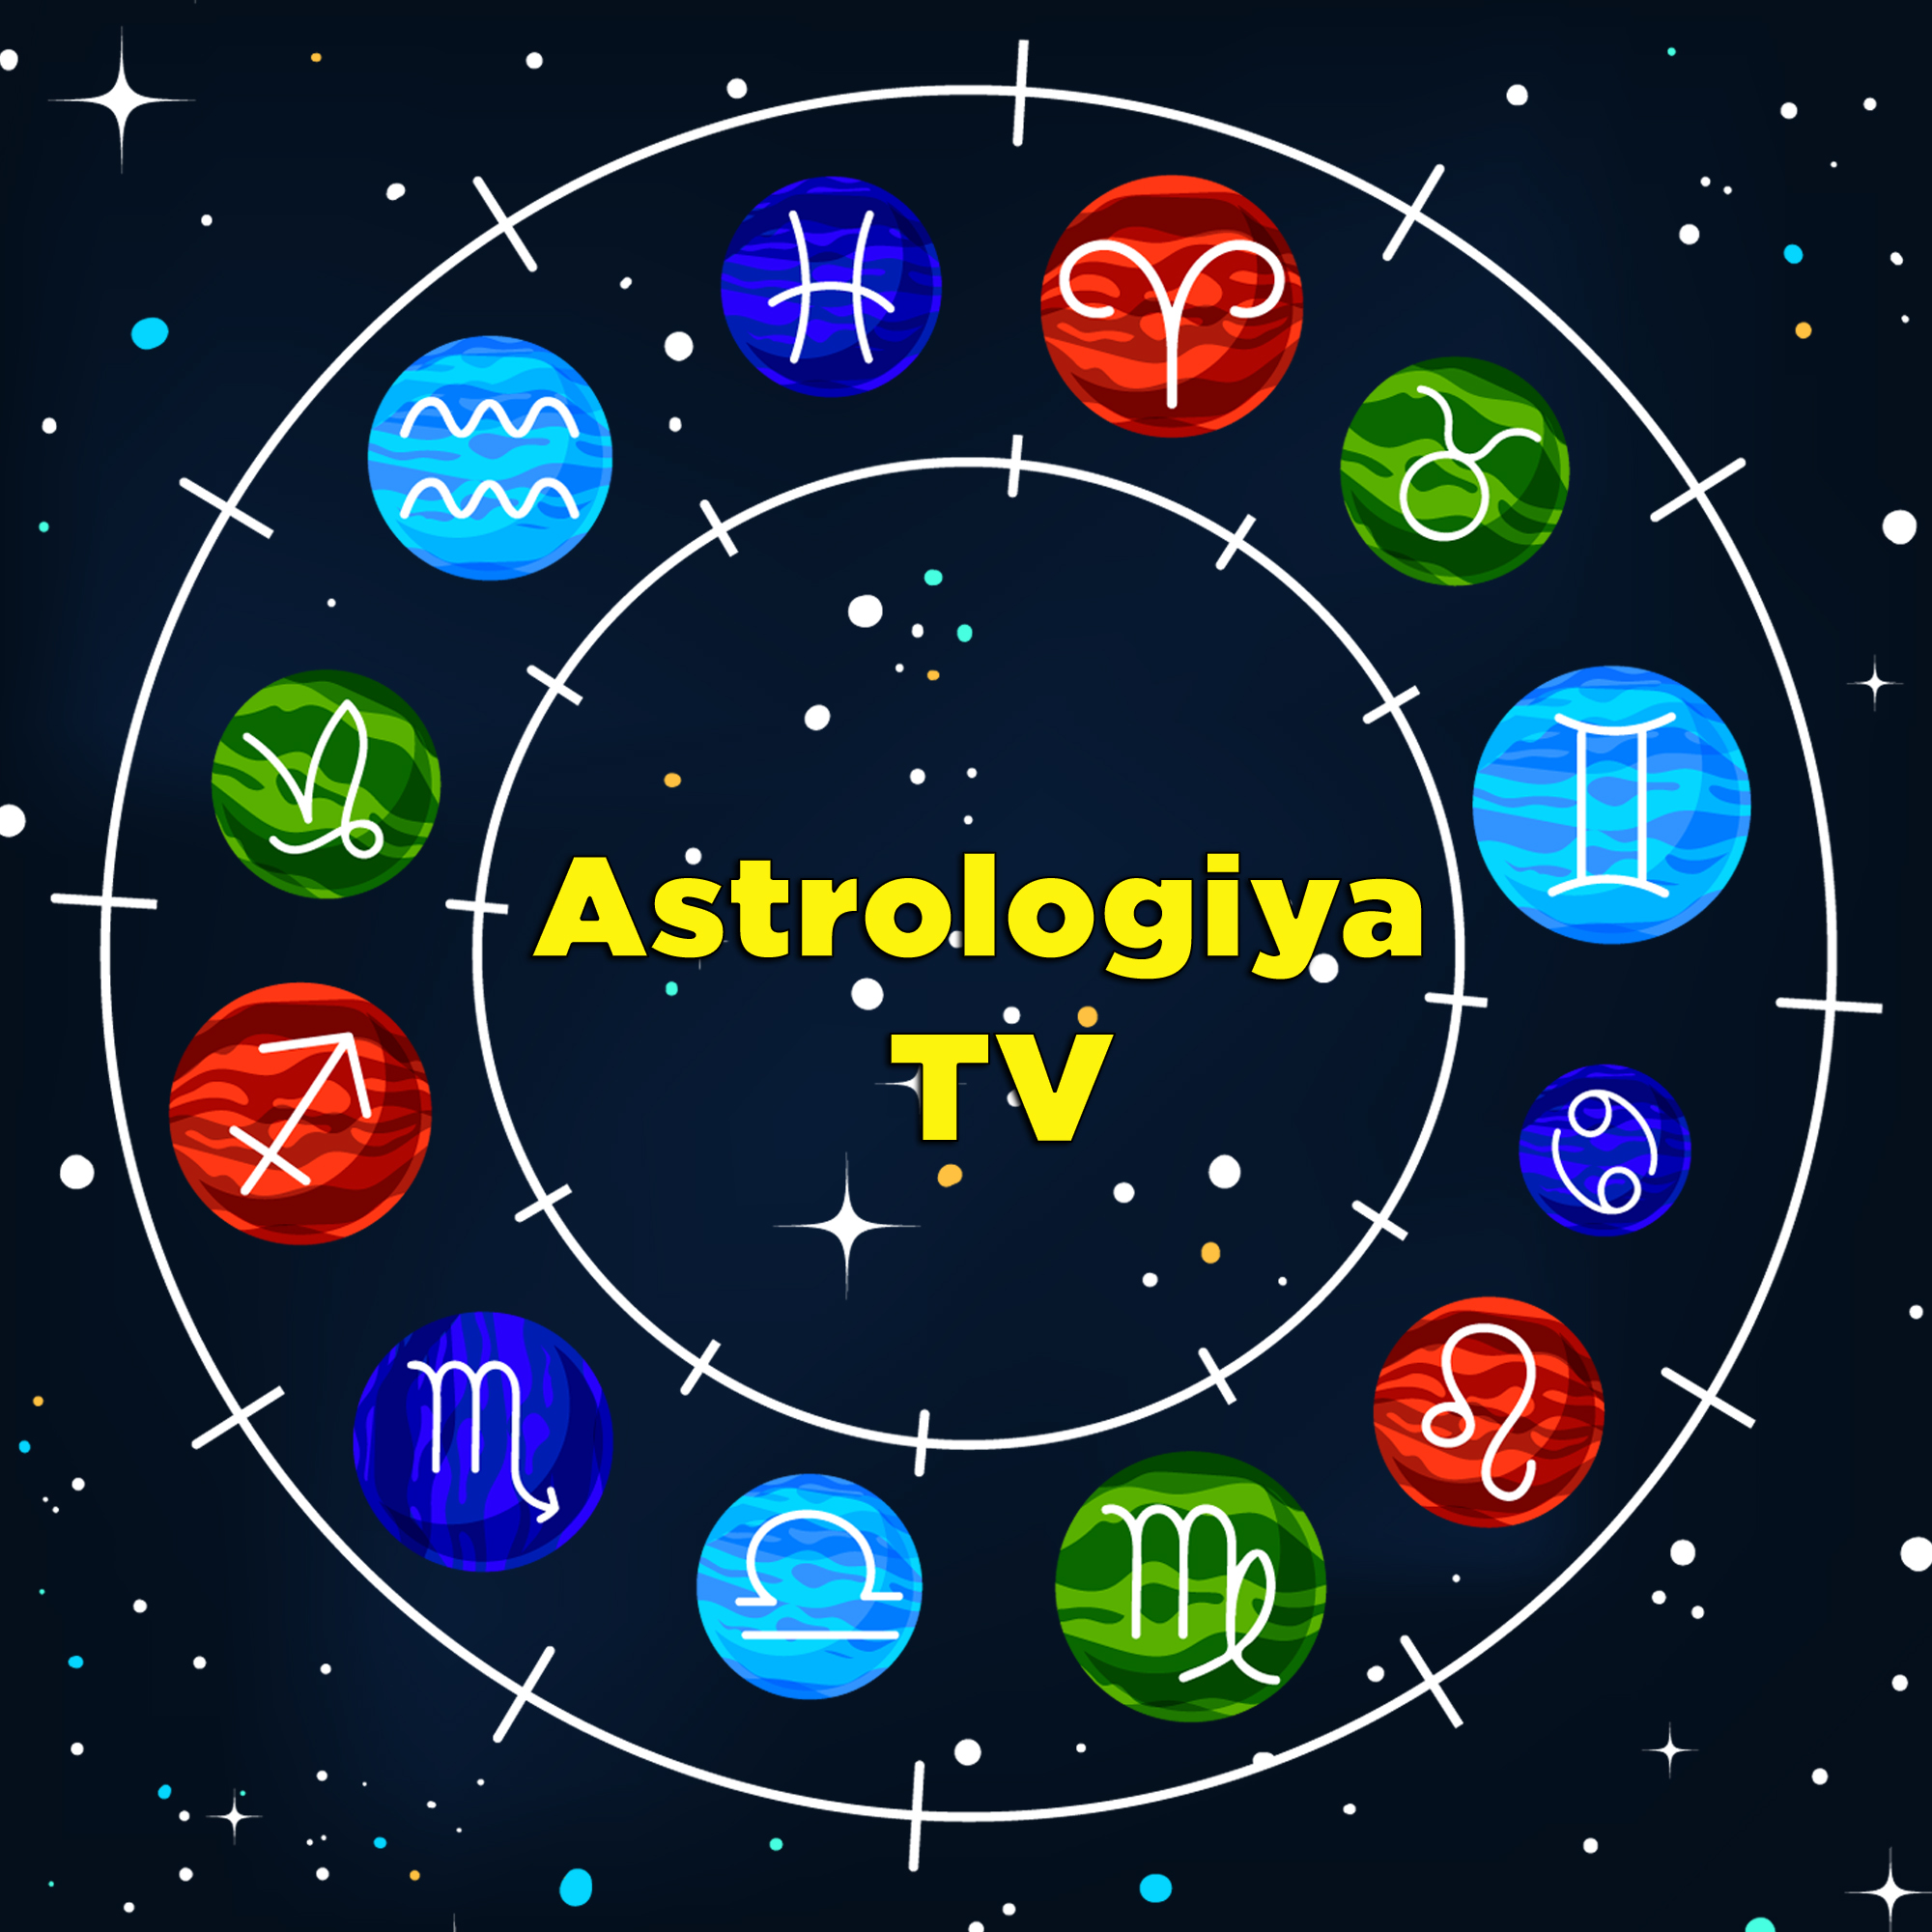 Astrologiya TV